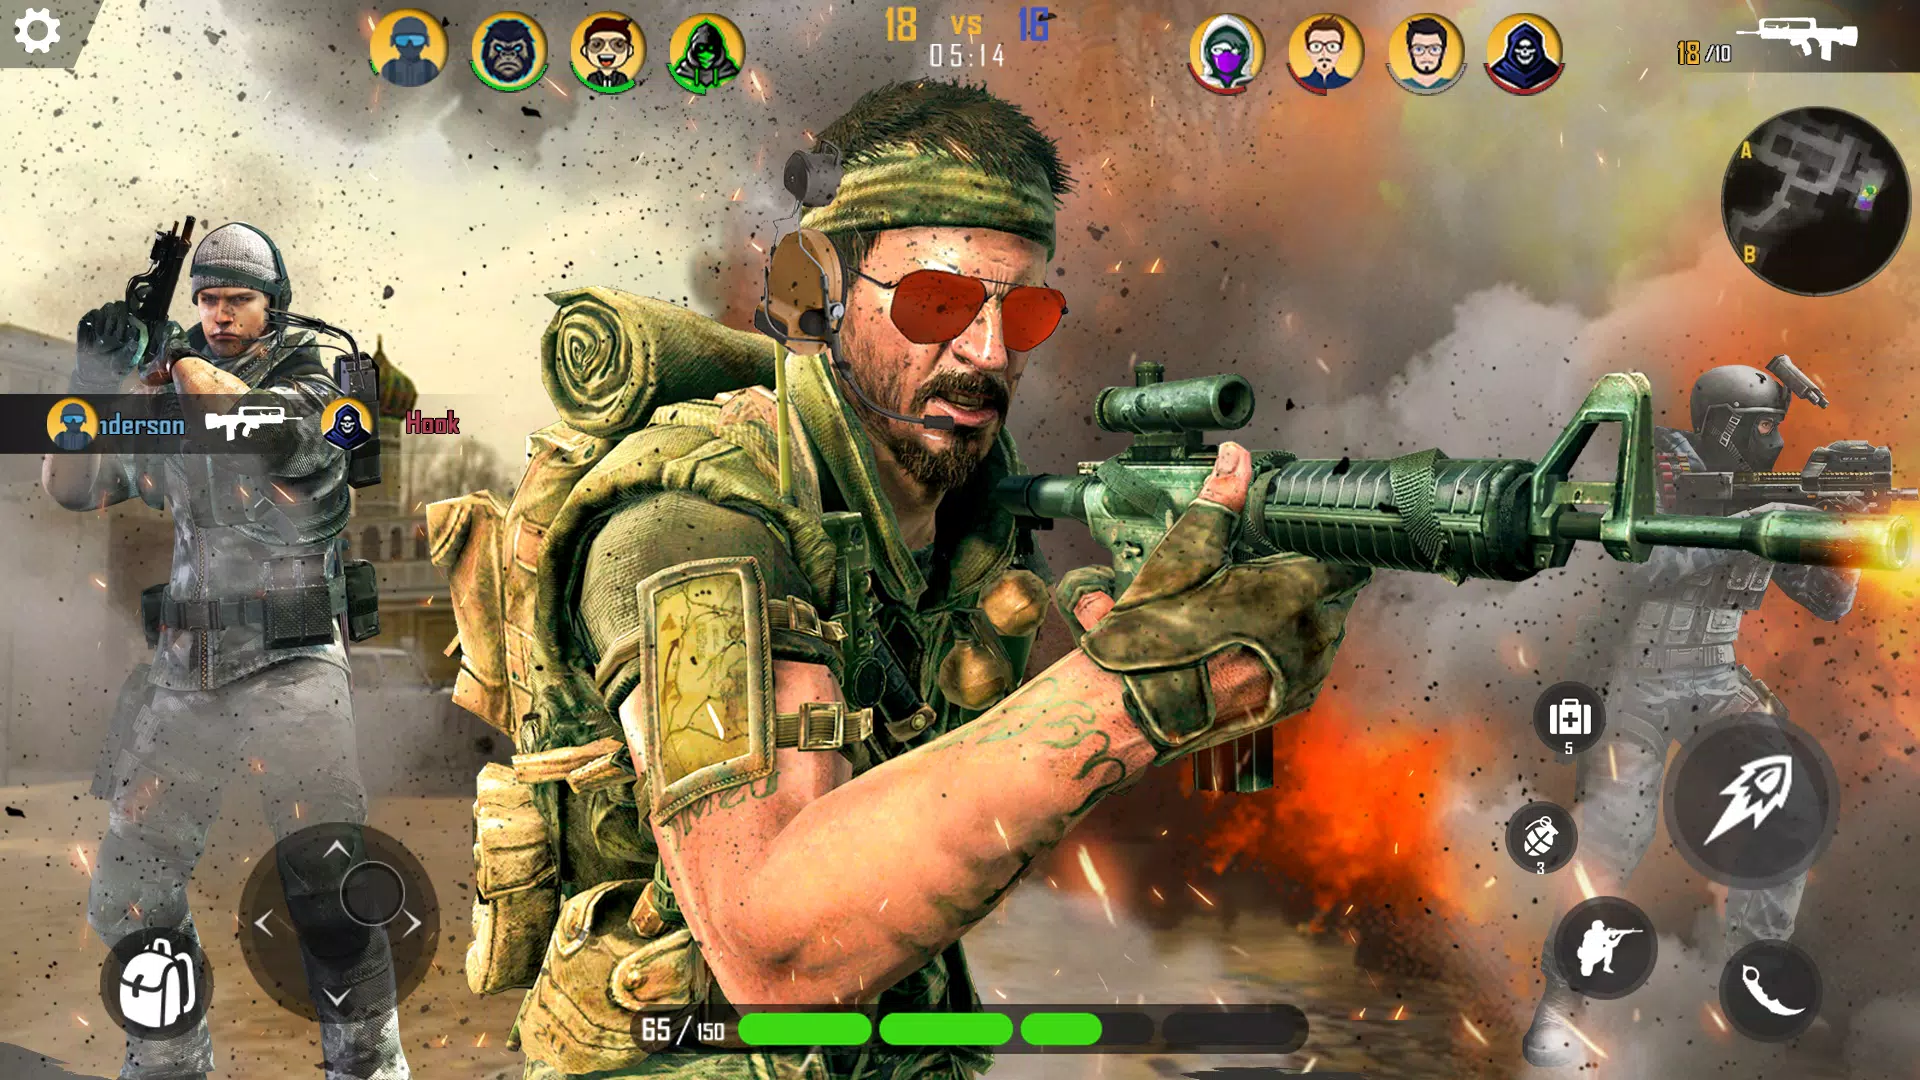 Download do APK de Moderno Pistola Jogos 3D para Android